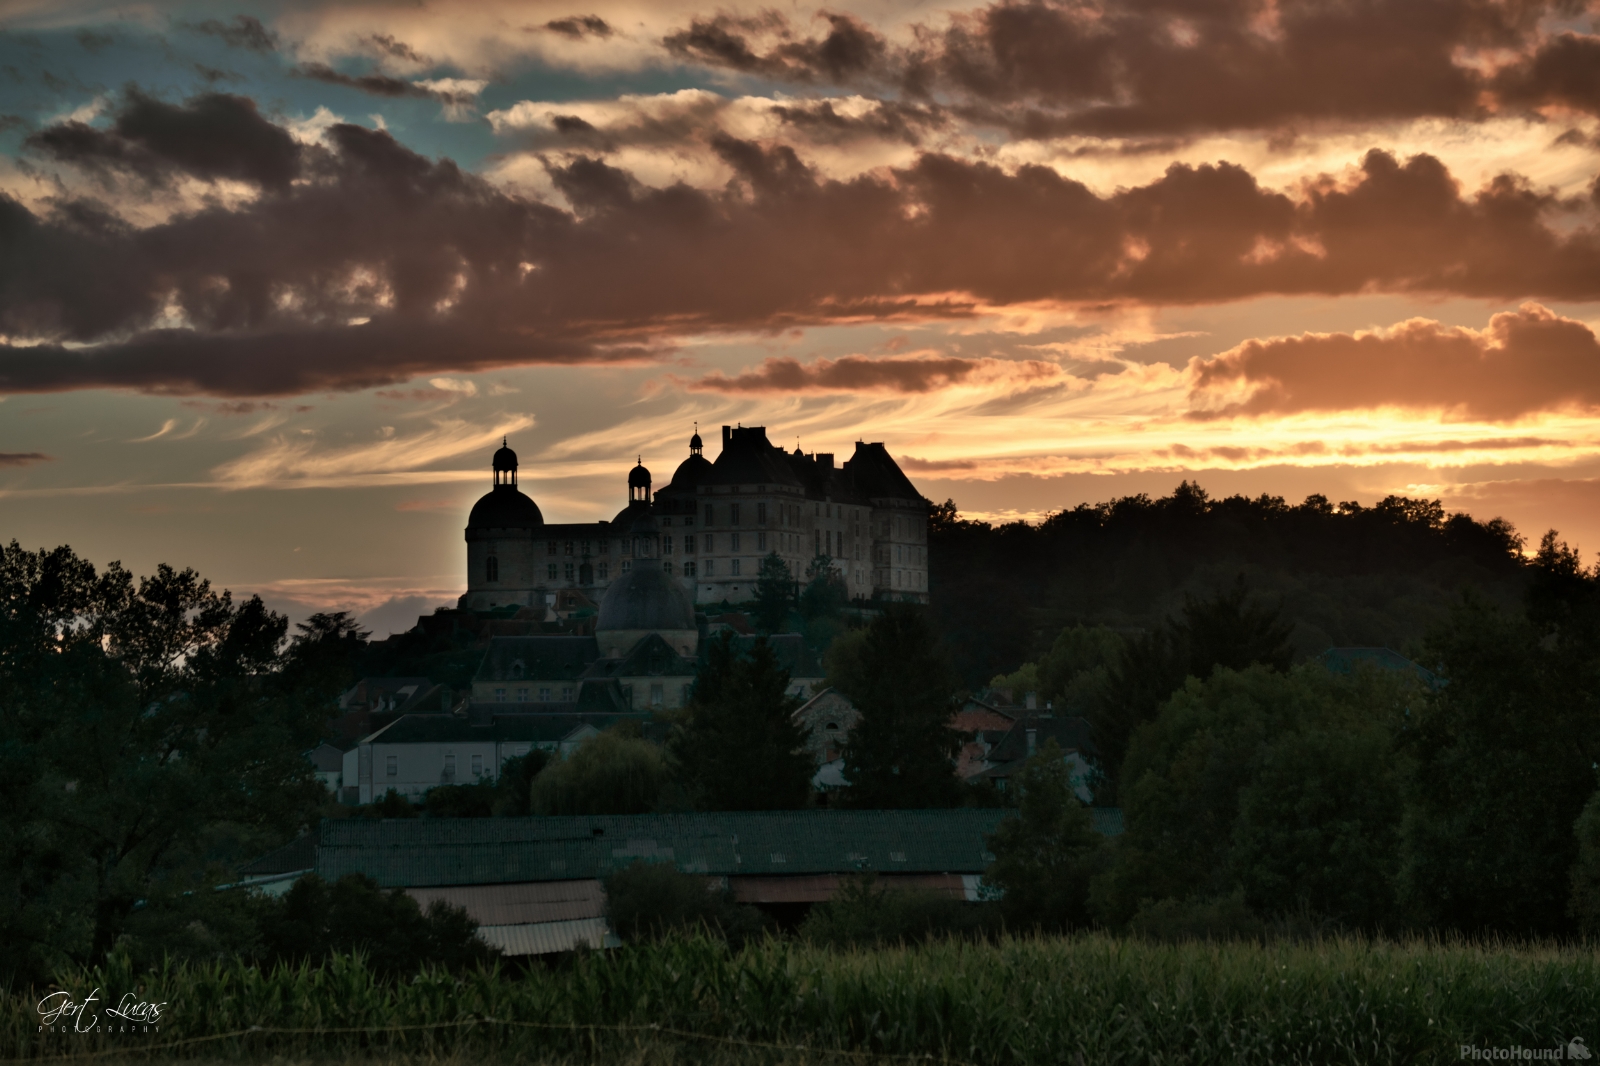 Image of Chateau de Hautefort (exterior - distant views) by Gert Lucas